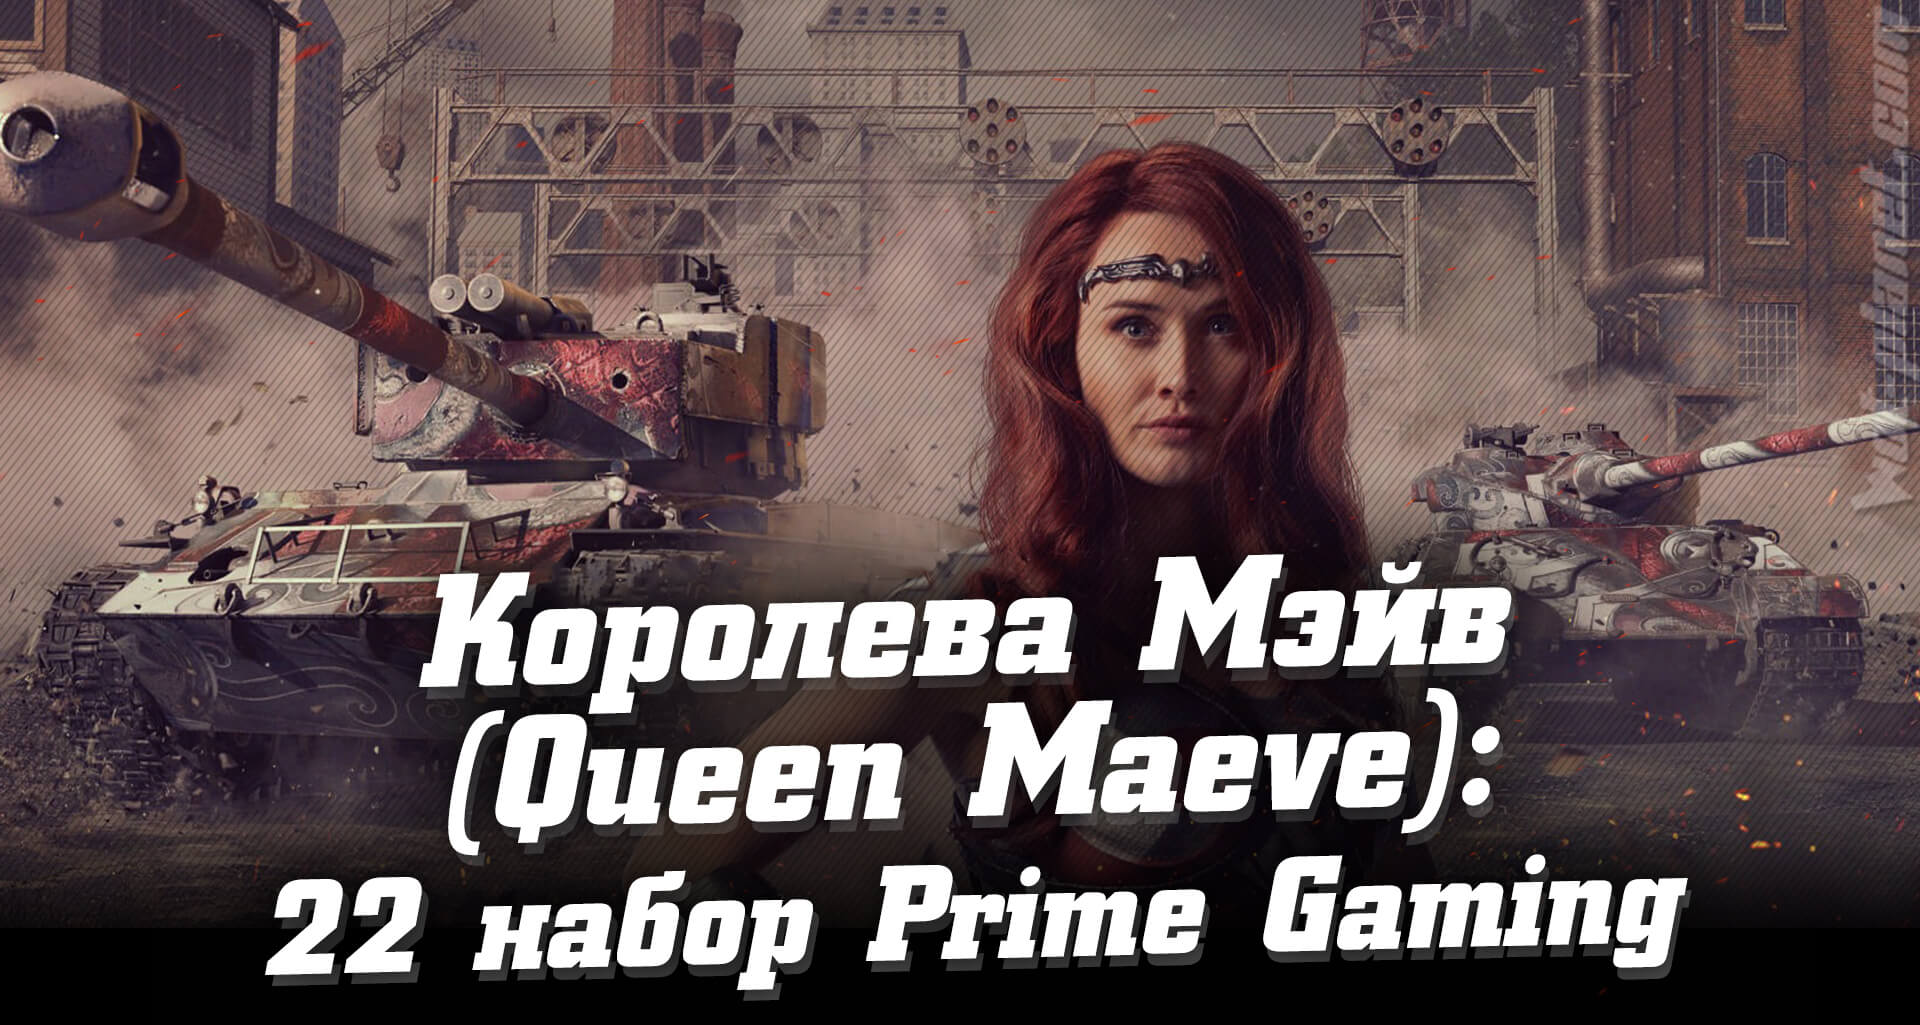 Как получить 22 набор Prime Gaming WoT — Queen Maeve (Королева Мэйв), ноябрь-декабрь 2020